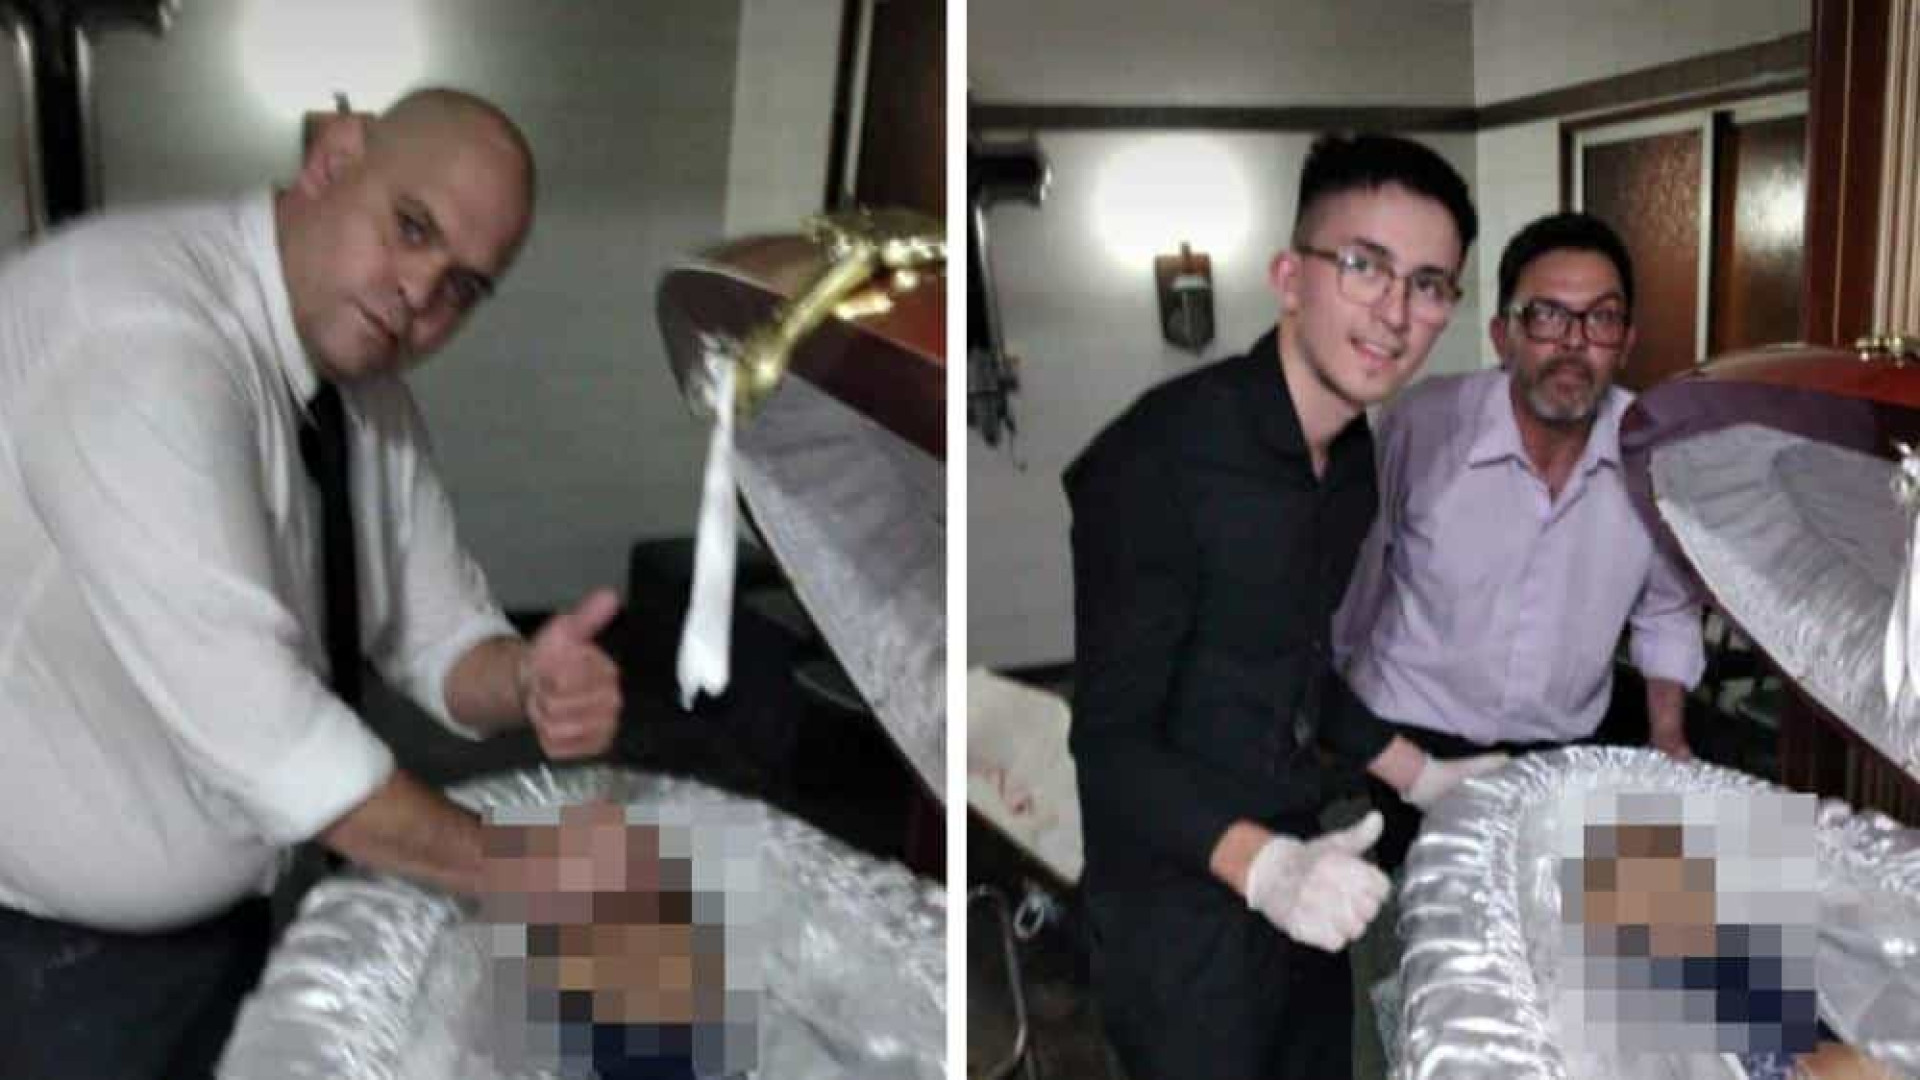 Ex-funcionário de funerária pede desculpas após fotos com Maradona em caixão